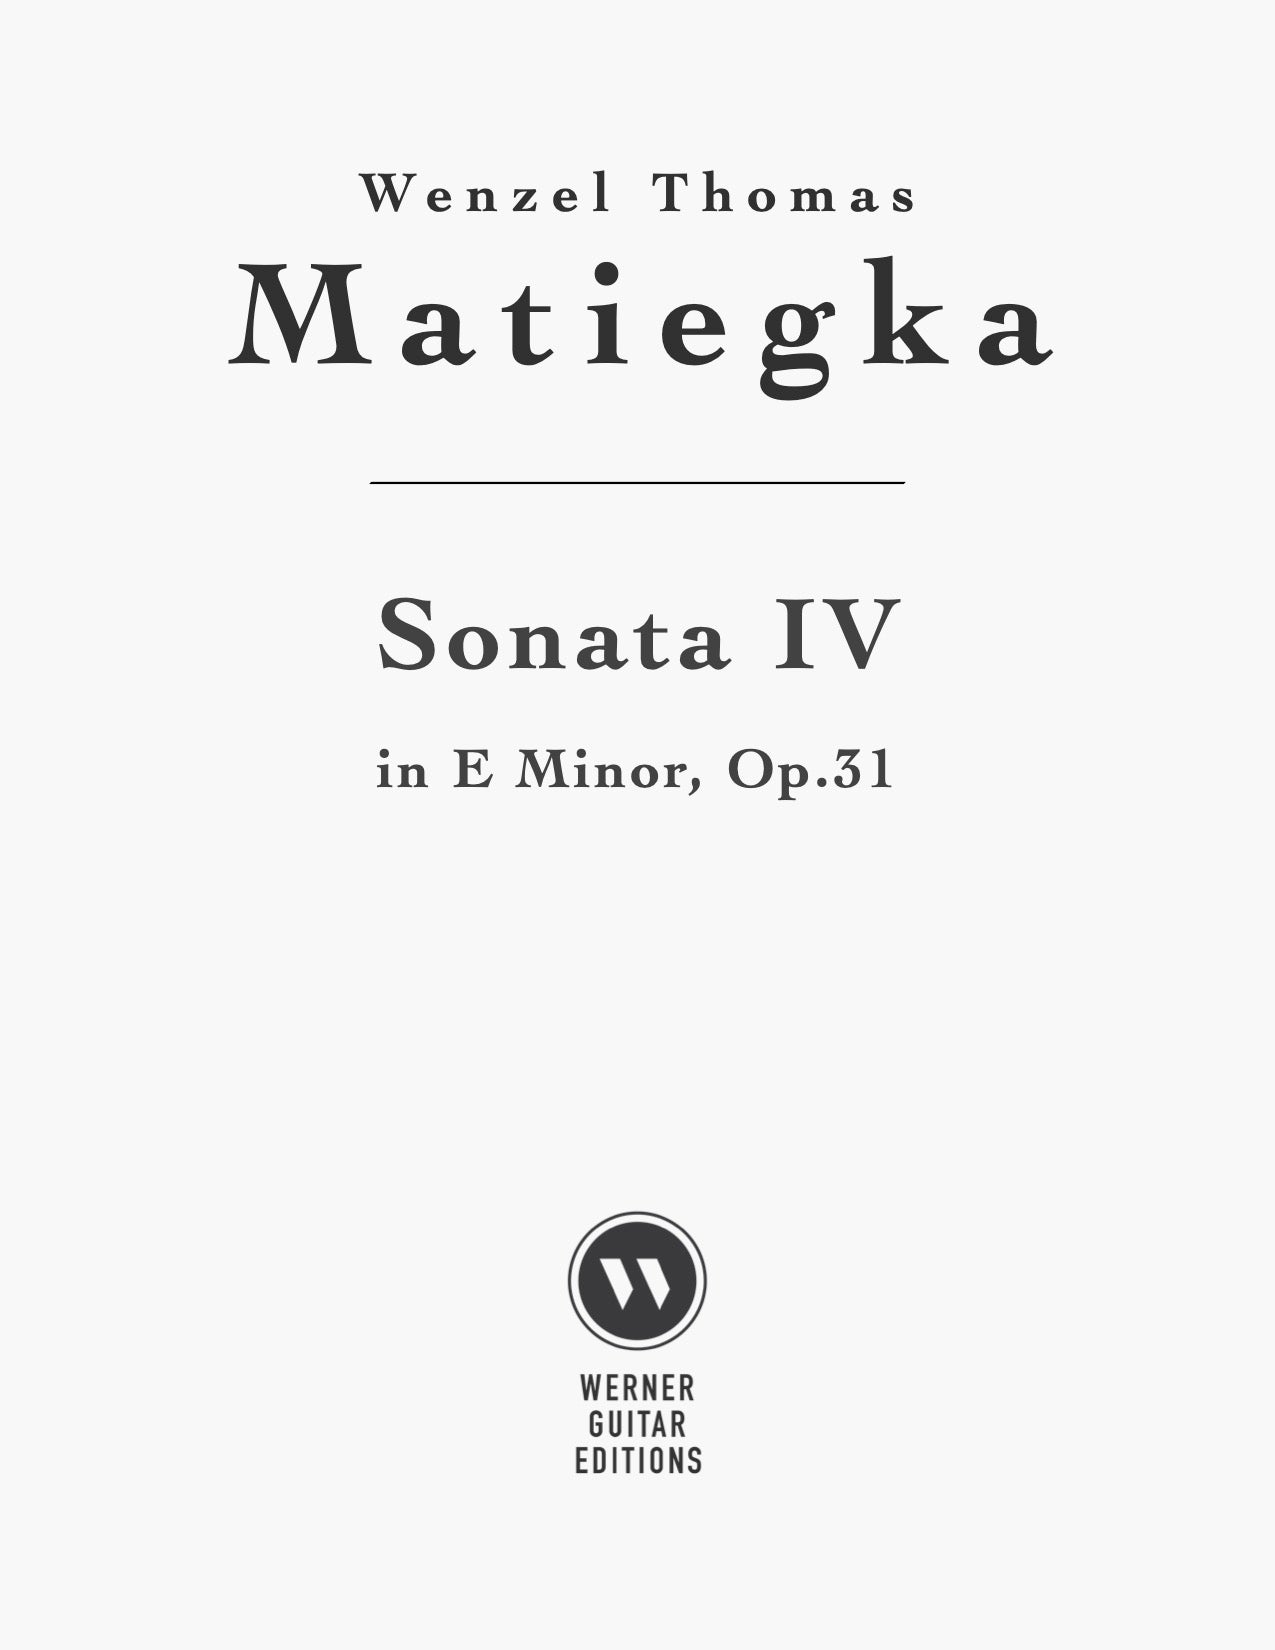 Sonata 4 in E minor, Op.31 by Wenzel Thomas Matiegka - PDF Sheet Music